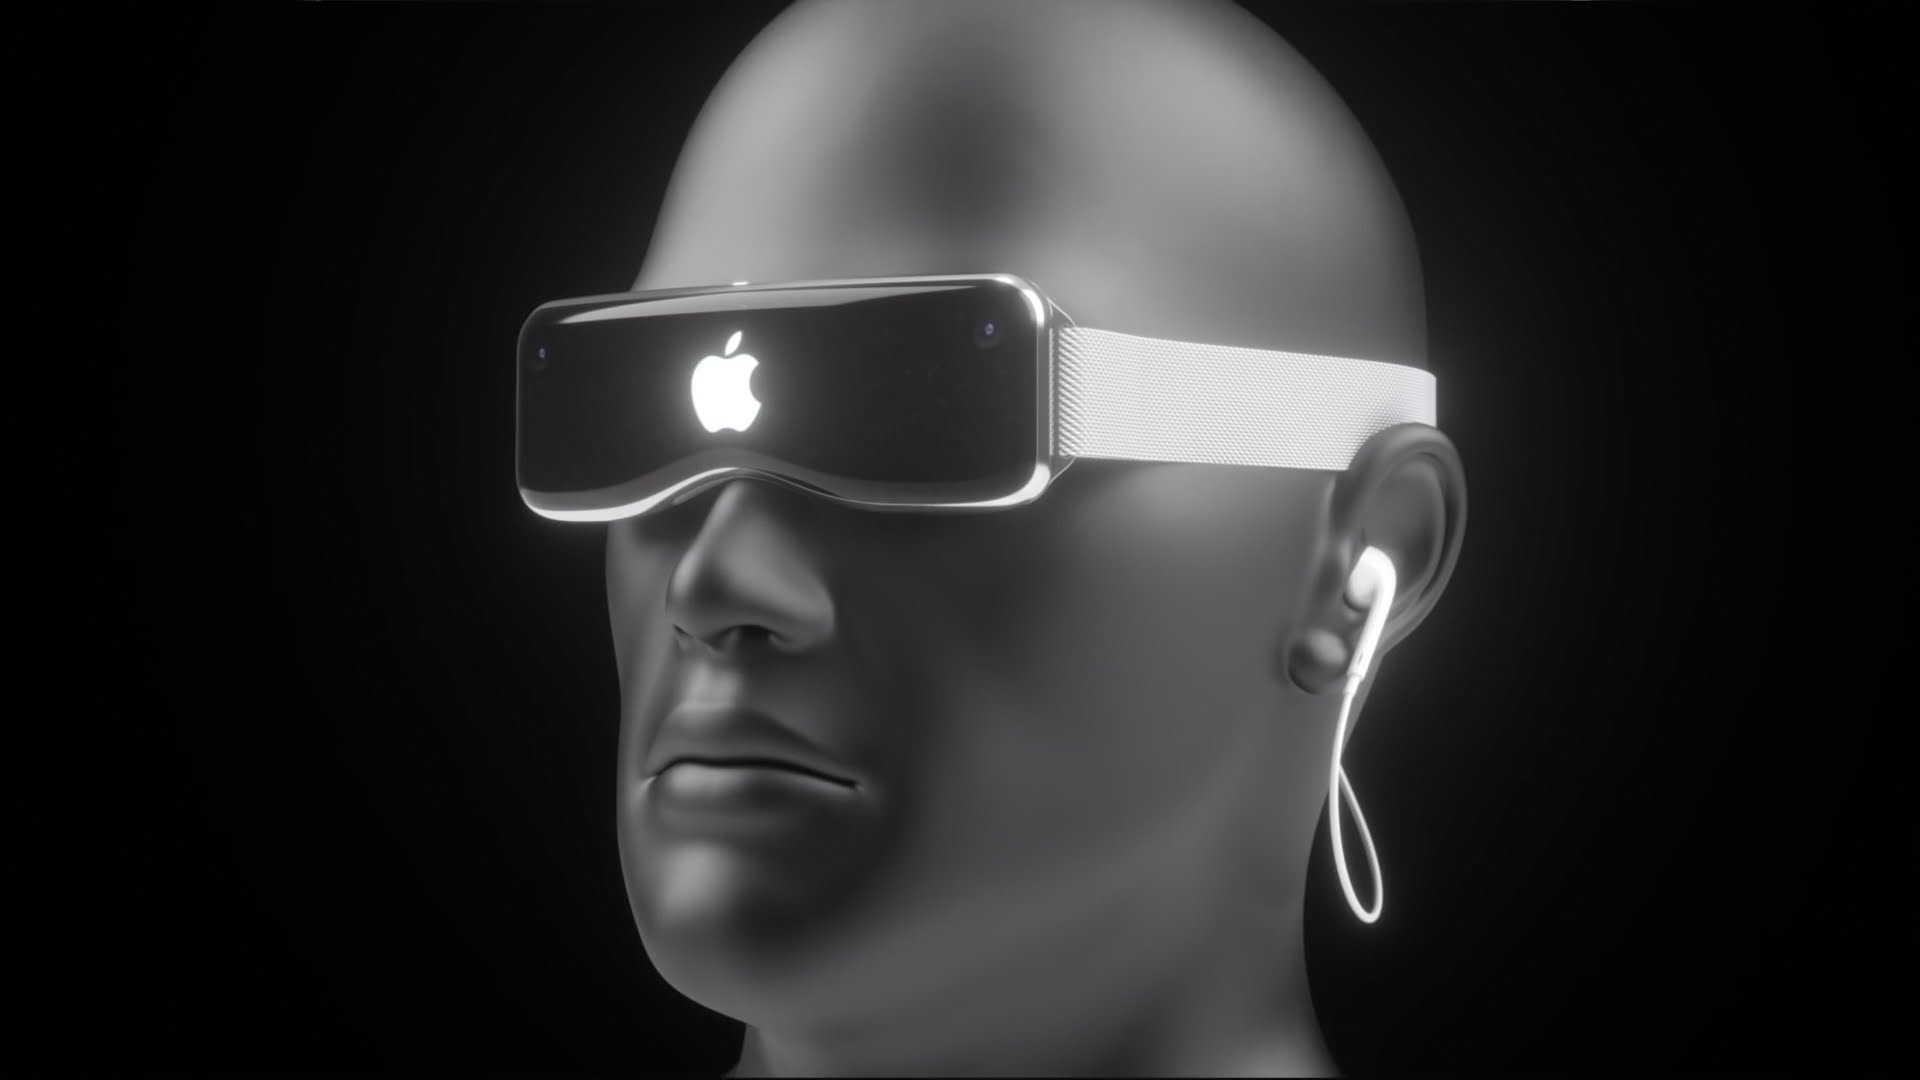 Finalement Apple aussi veut ses lunettes connectées, même si c'est nul !